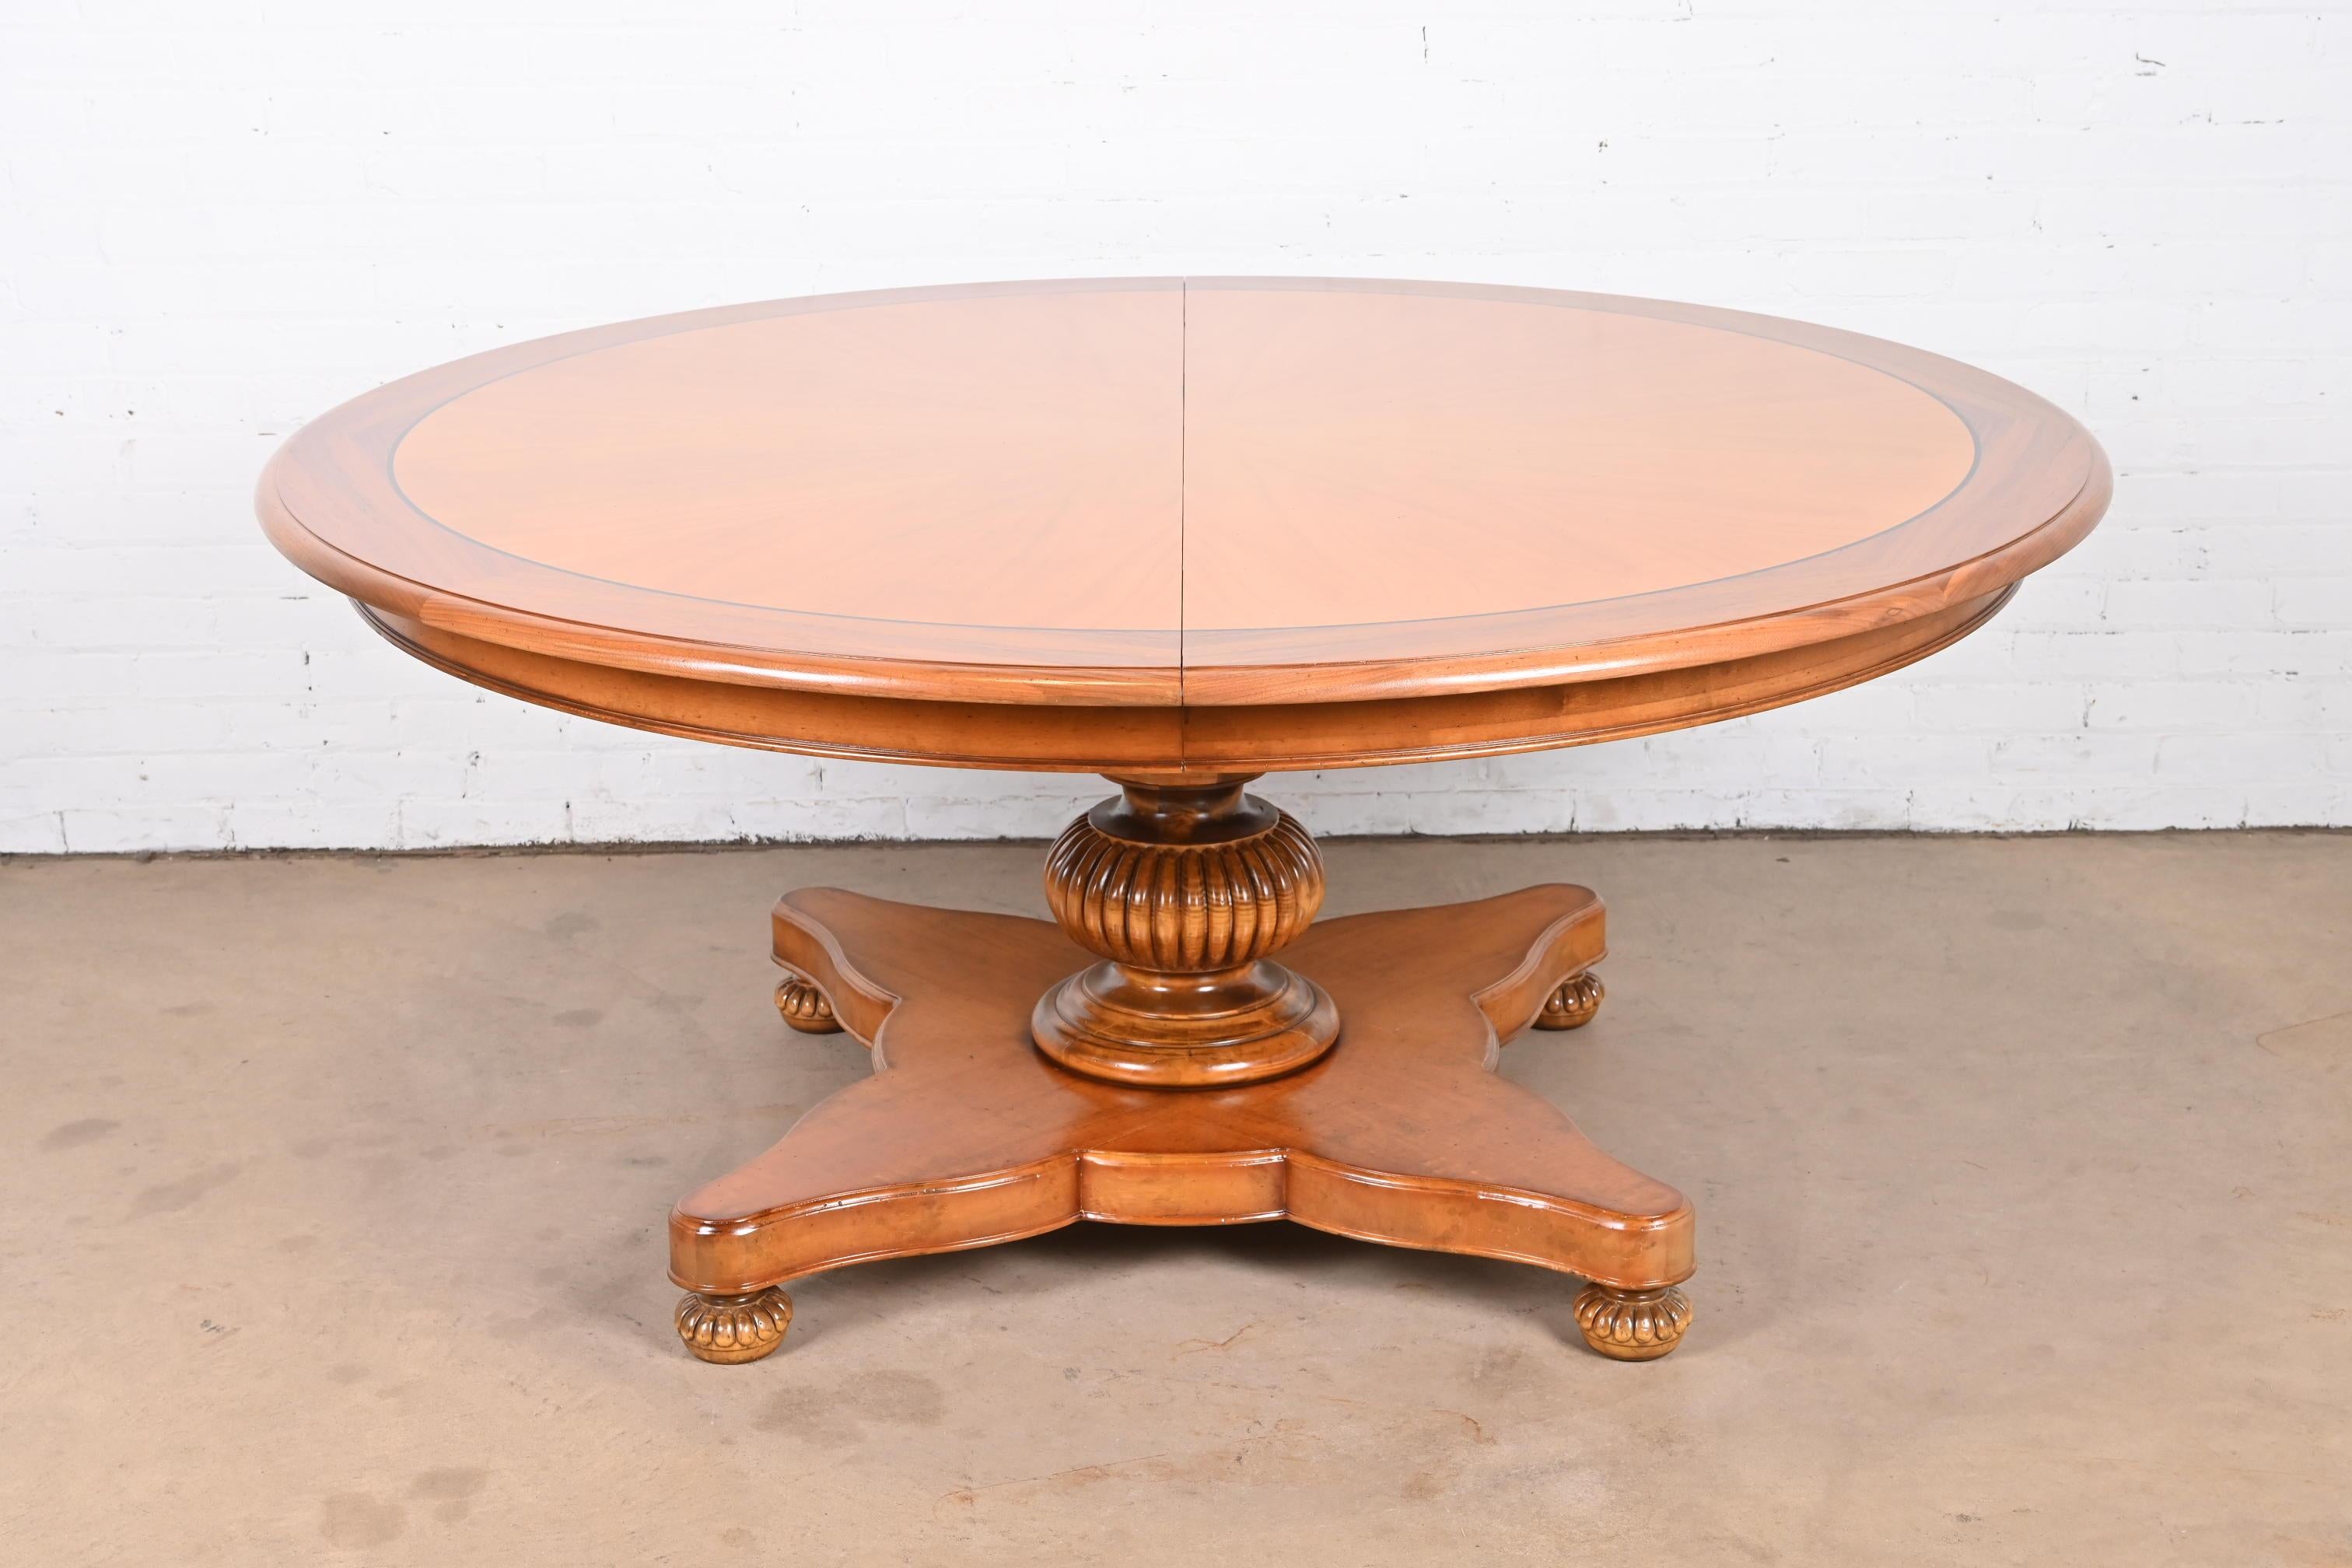 Grande table à manger à rallonge de style néoclassique ou provincial italien.

Par Baker Furniture, collection 